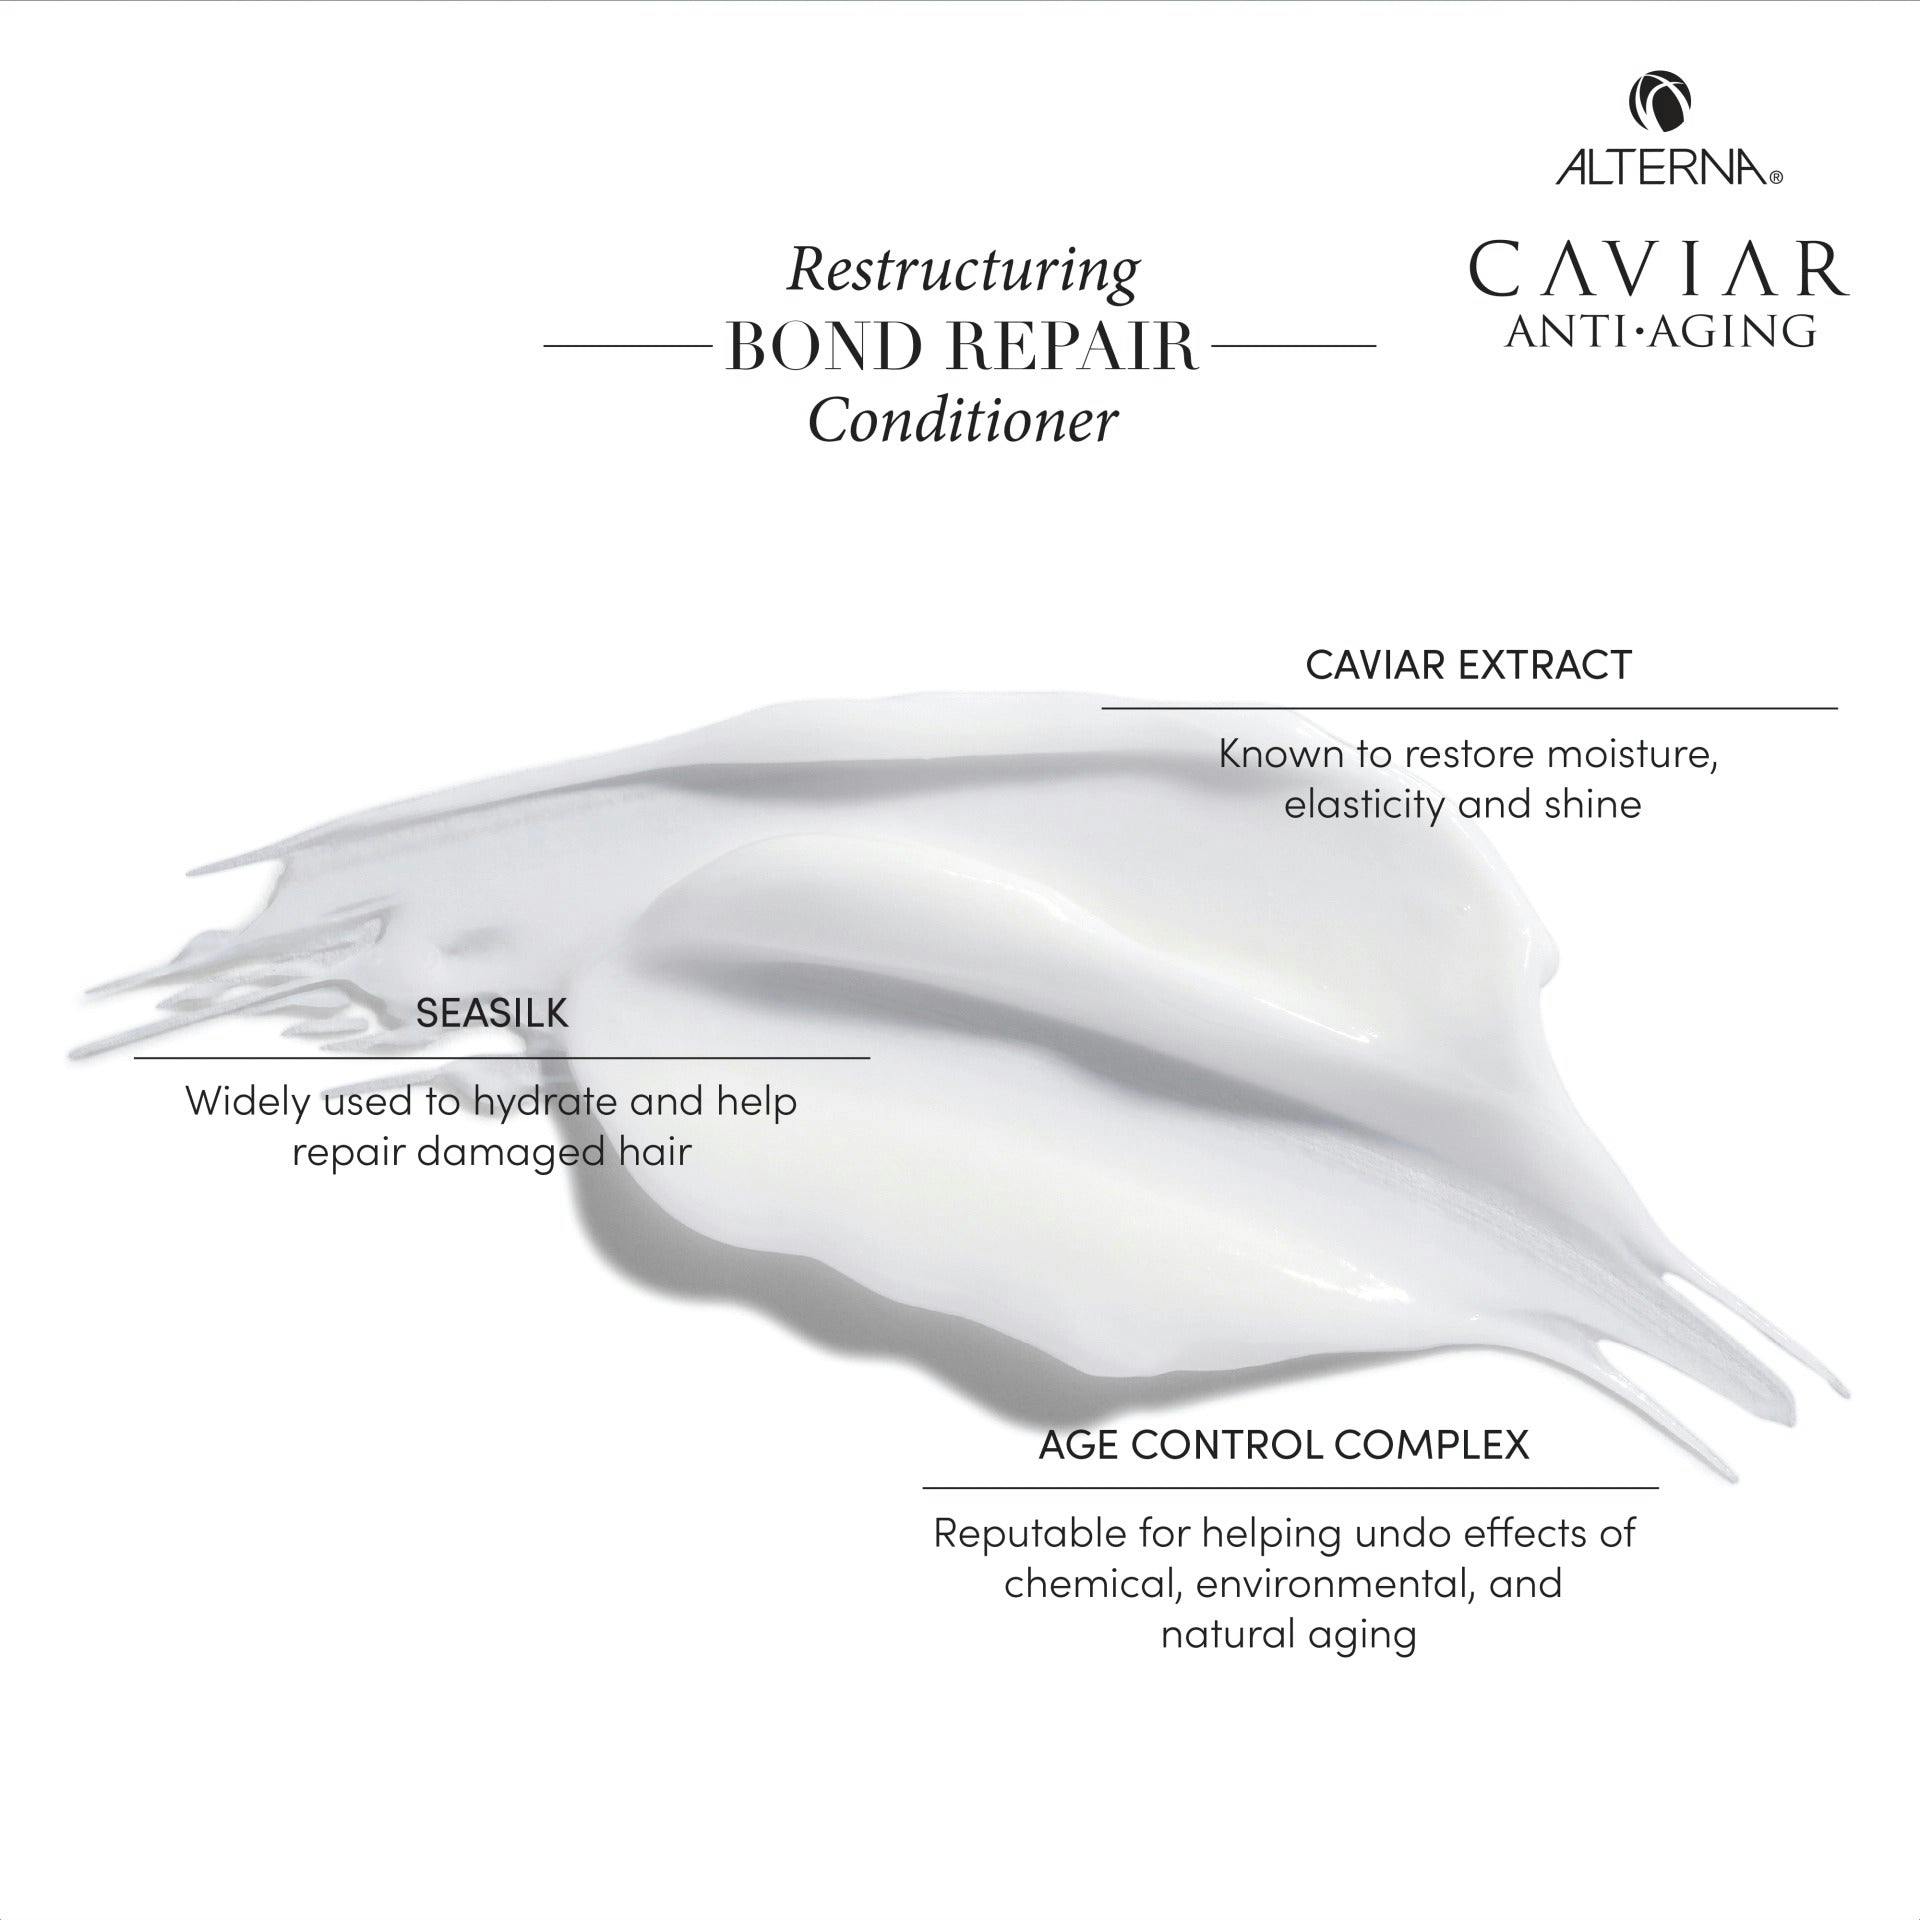 Alterna CAVIAR Anti-Aging Restructuring Bond Repair Conditioner 250ml